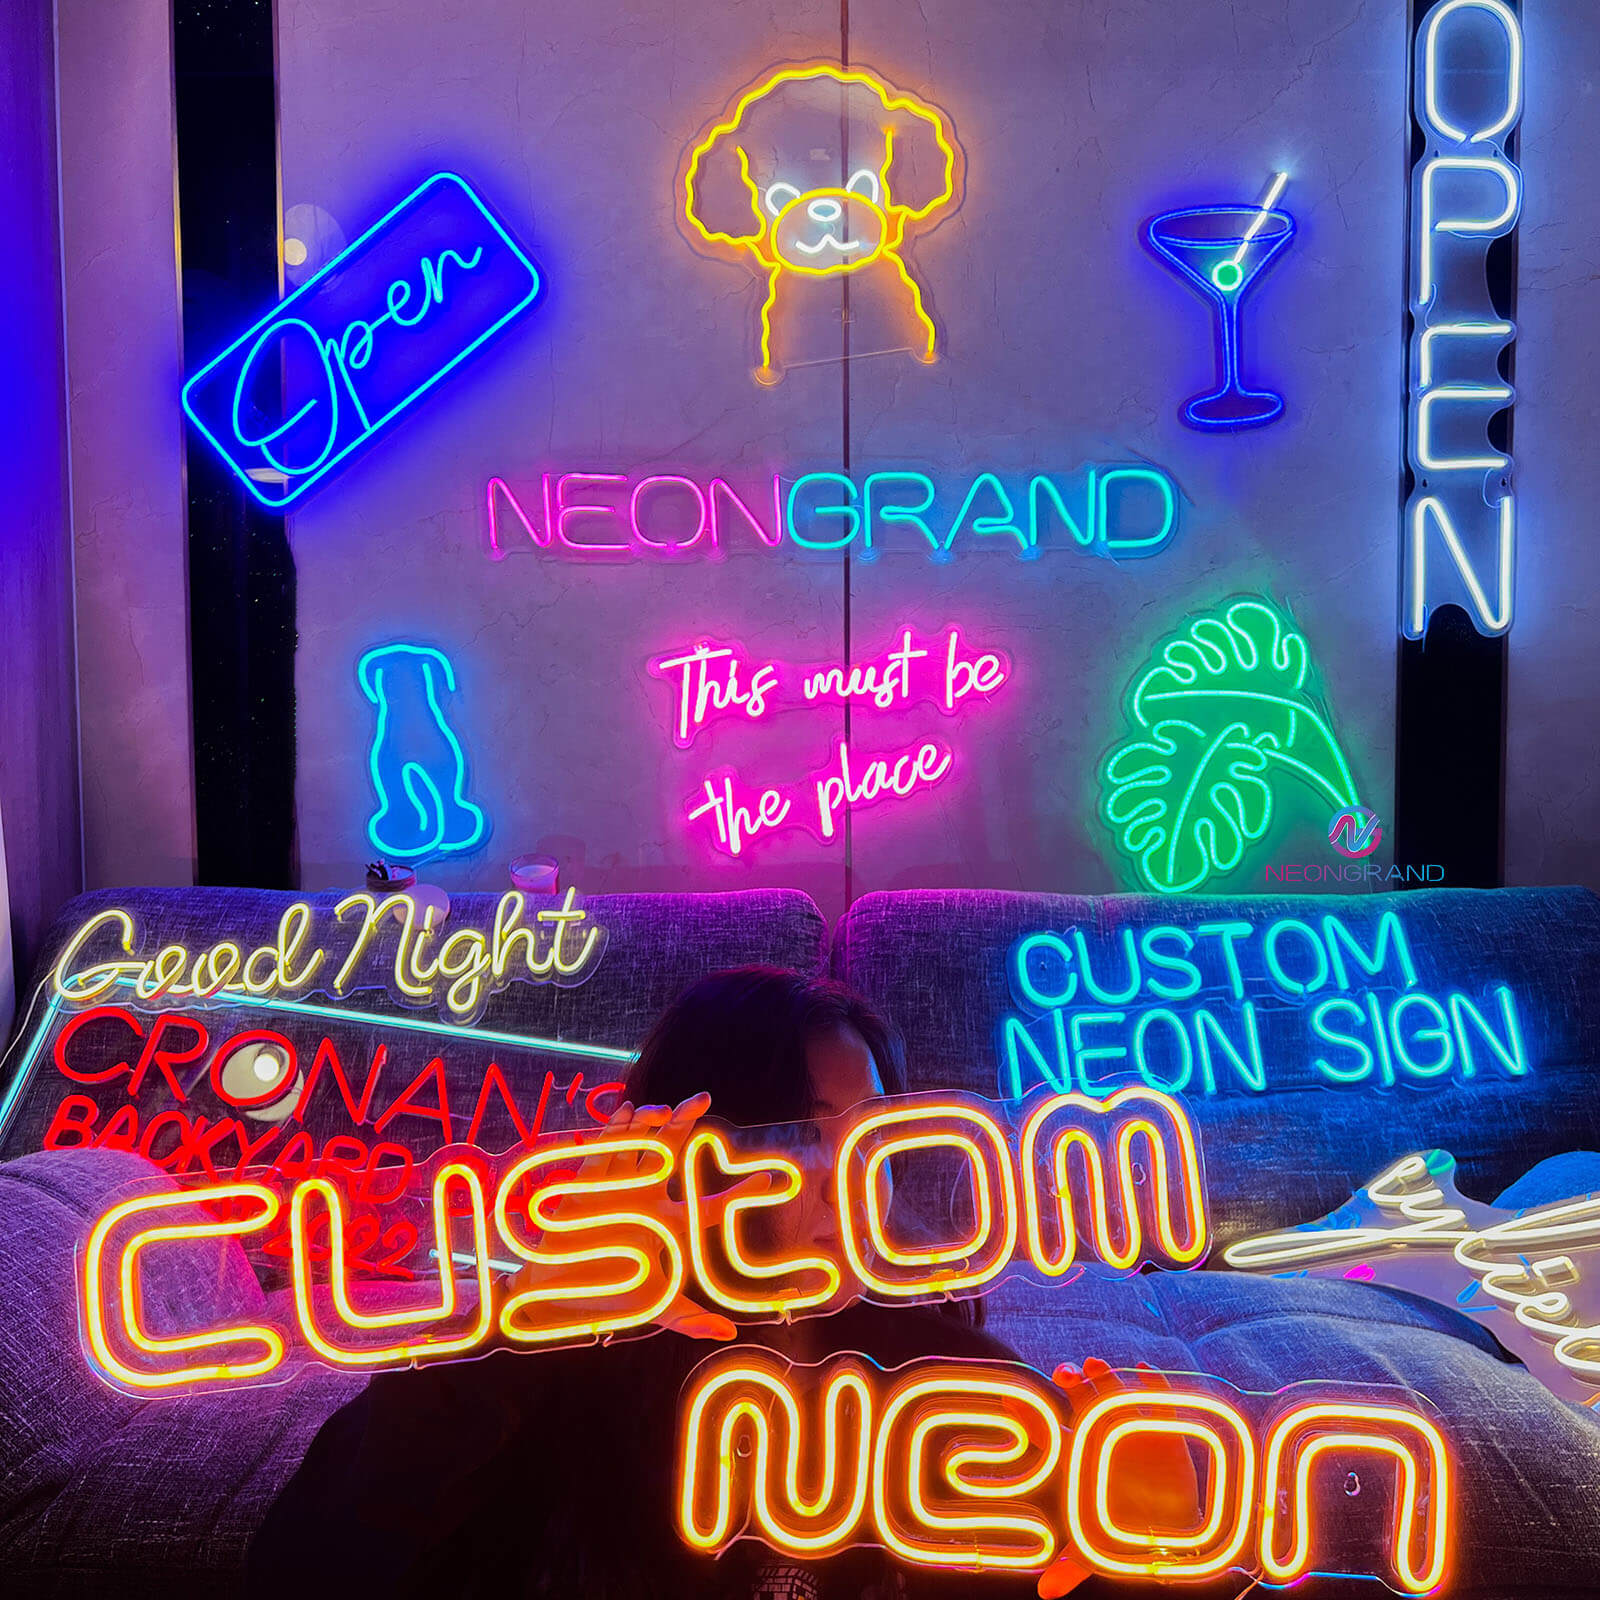 Custom Neon Signs Led Light - NeonGrand